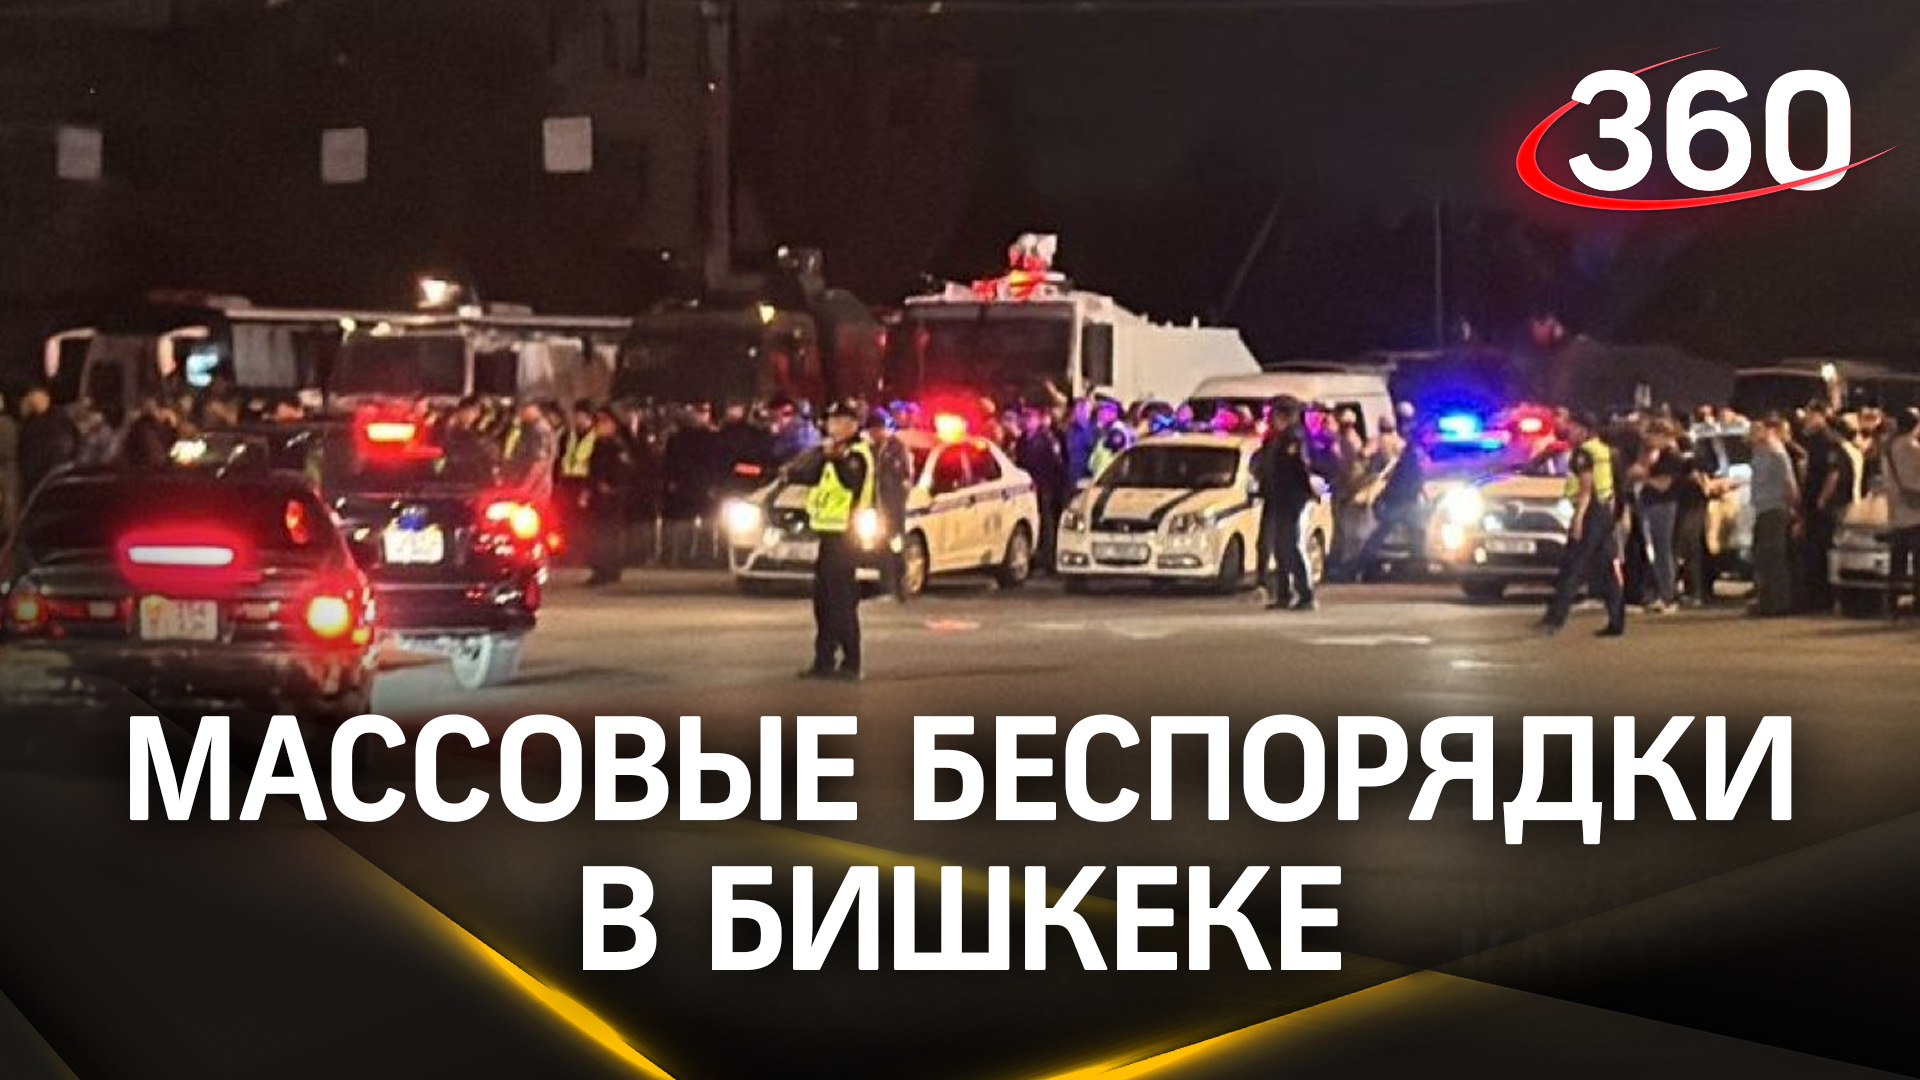 Драка жителей Бишкека с иностранцами в хостеле переросла в масштабный митинг - 30 пострадавших